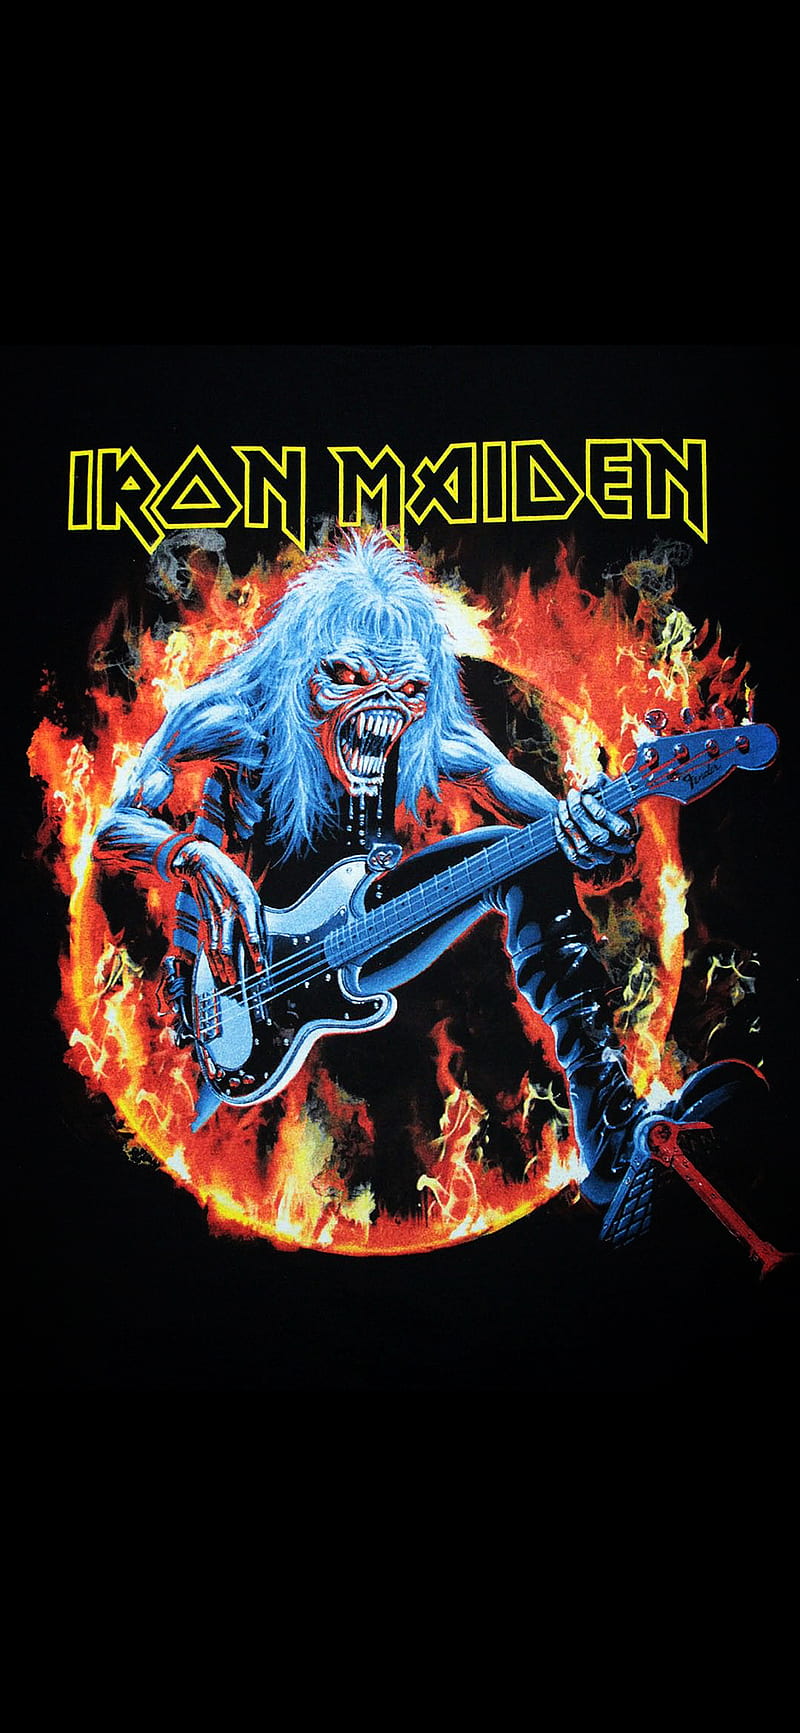 iron maiden album cover